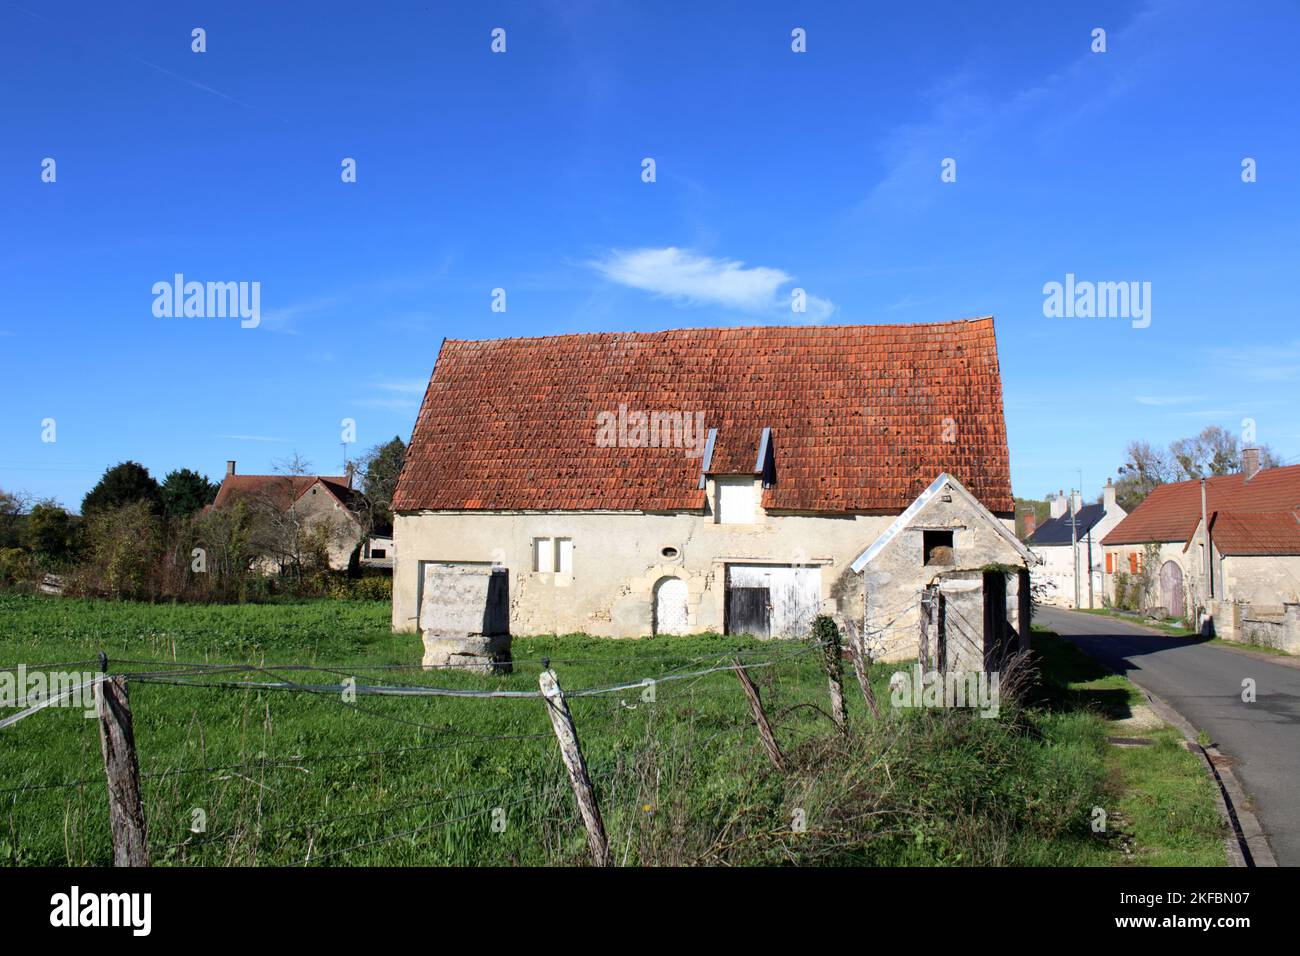 Une ancienne maison de campagne française et des dépendances situées dans une jolie rue rurale ici dans le village de Champcelée situé dans la Nièvre en France Banque D'Images